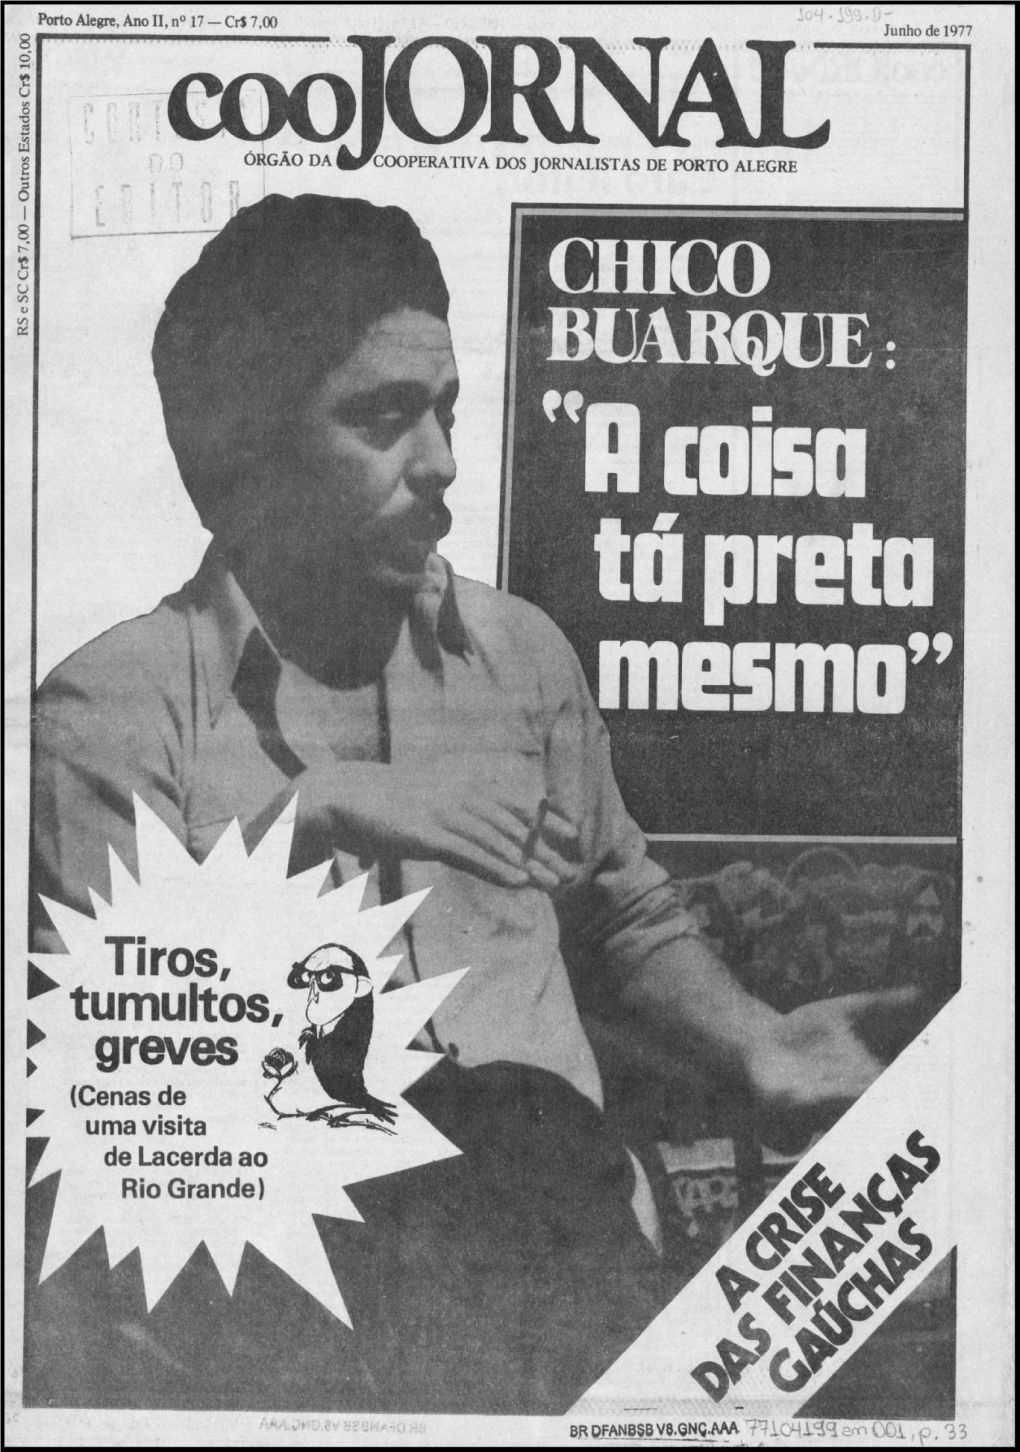 Porto Alegre, Ano II, No 17 - Cr$ 7,00 I Junho De 1977 Z © Em N H % O 2 O O 3 a JORNAL (63) a ÓRGÃO DA COOPERATIVA DOS JORNALISTAS DE PORTO ALEGRE